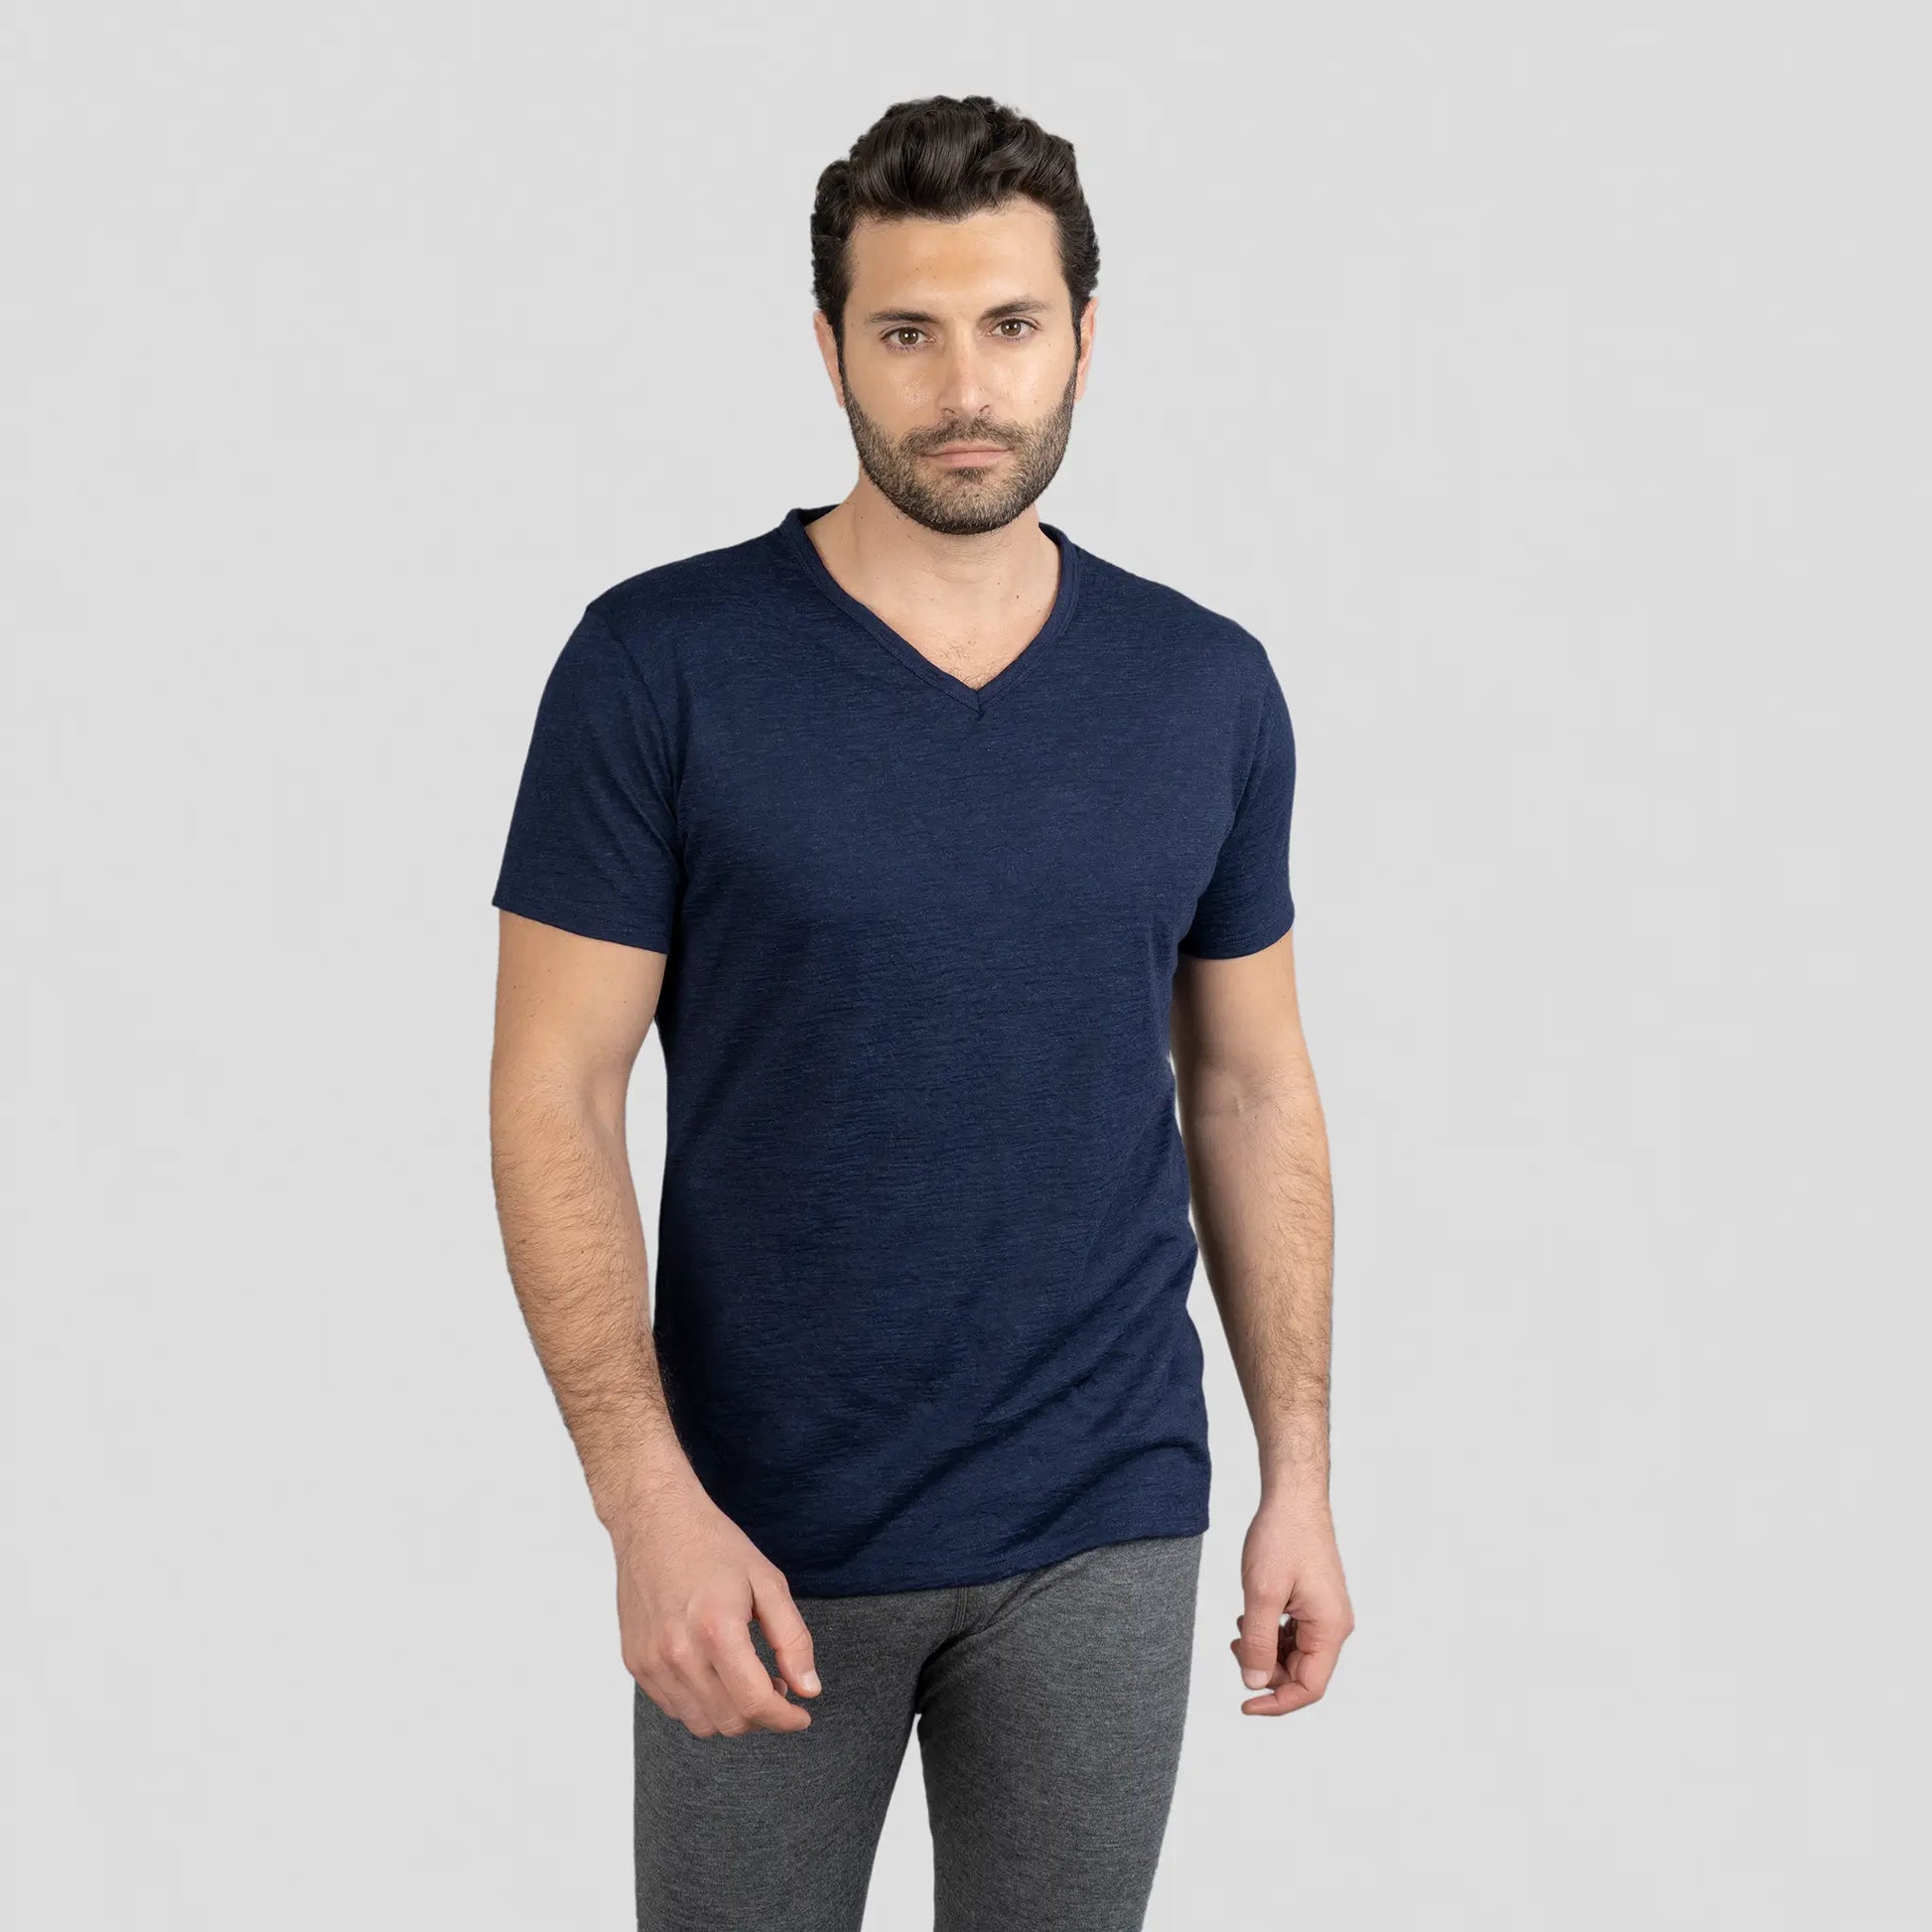 mens versatile design vneck tshirt color navy blue